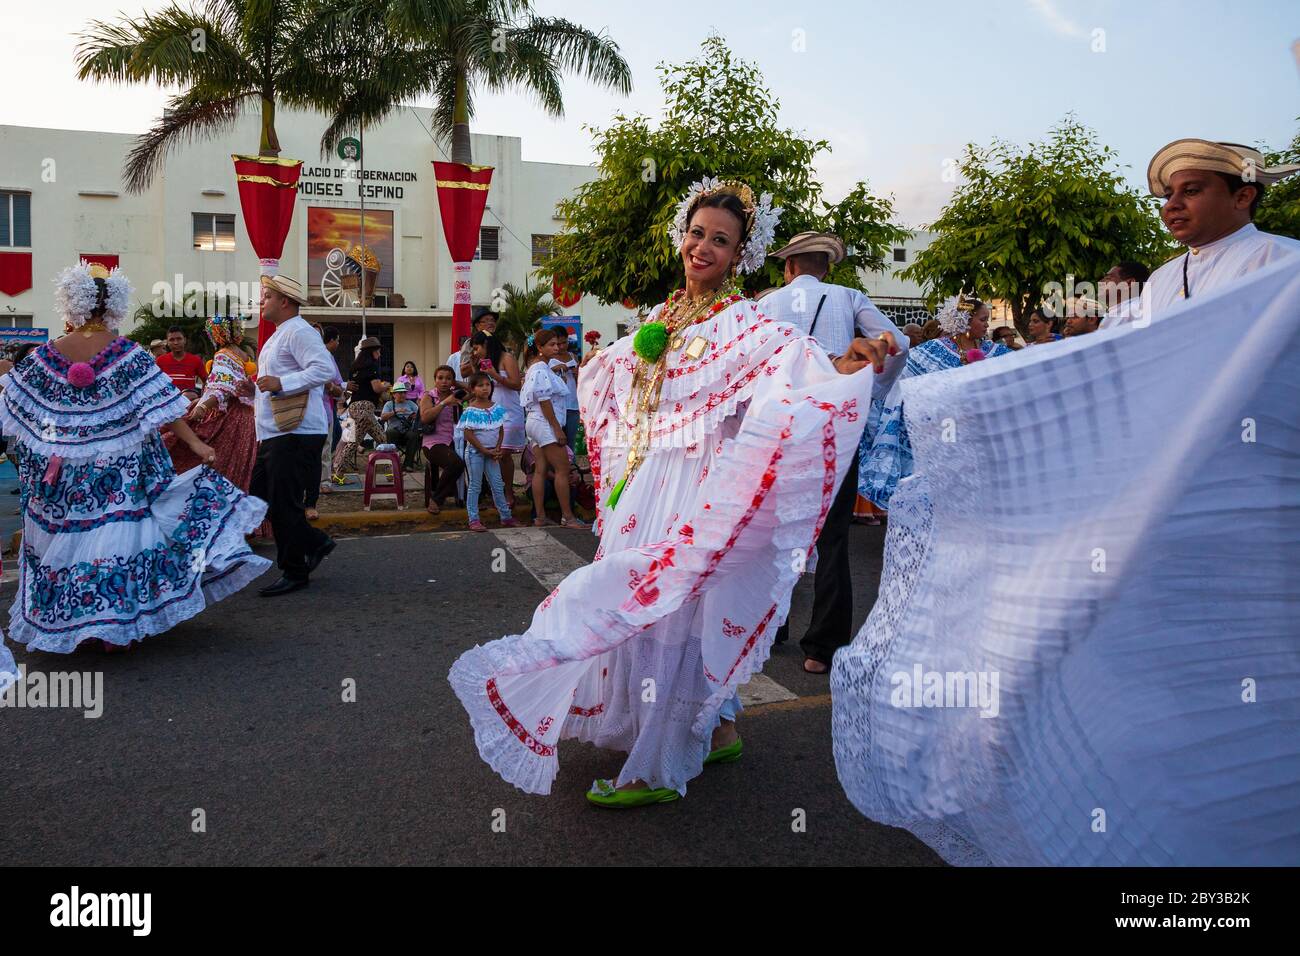 Panamanians on the annual event 'El desfile de las mil polleras' in Las Tablas, Los Santos province, Republic of Panama. Stock Photo